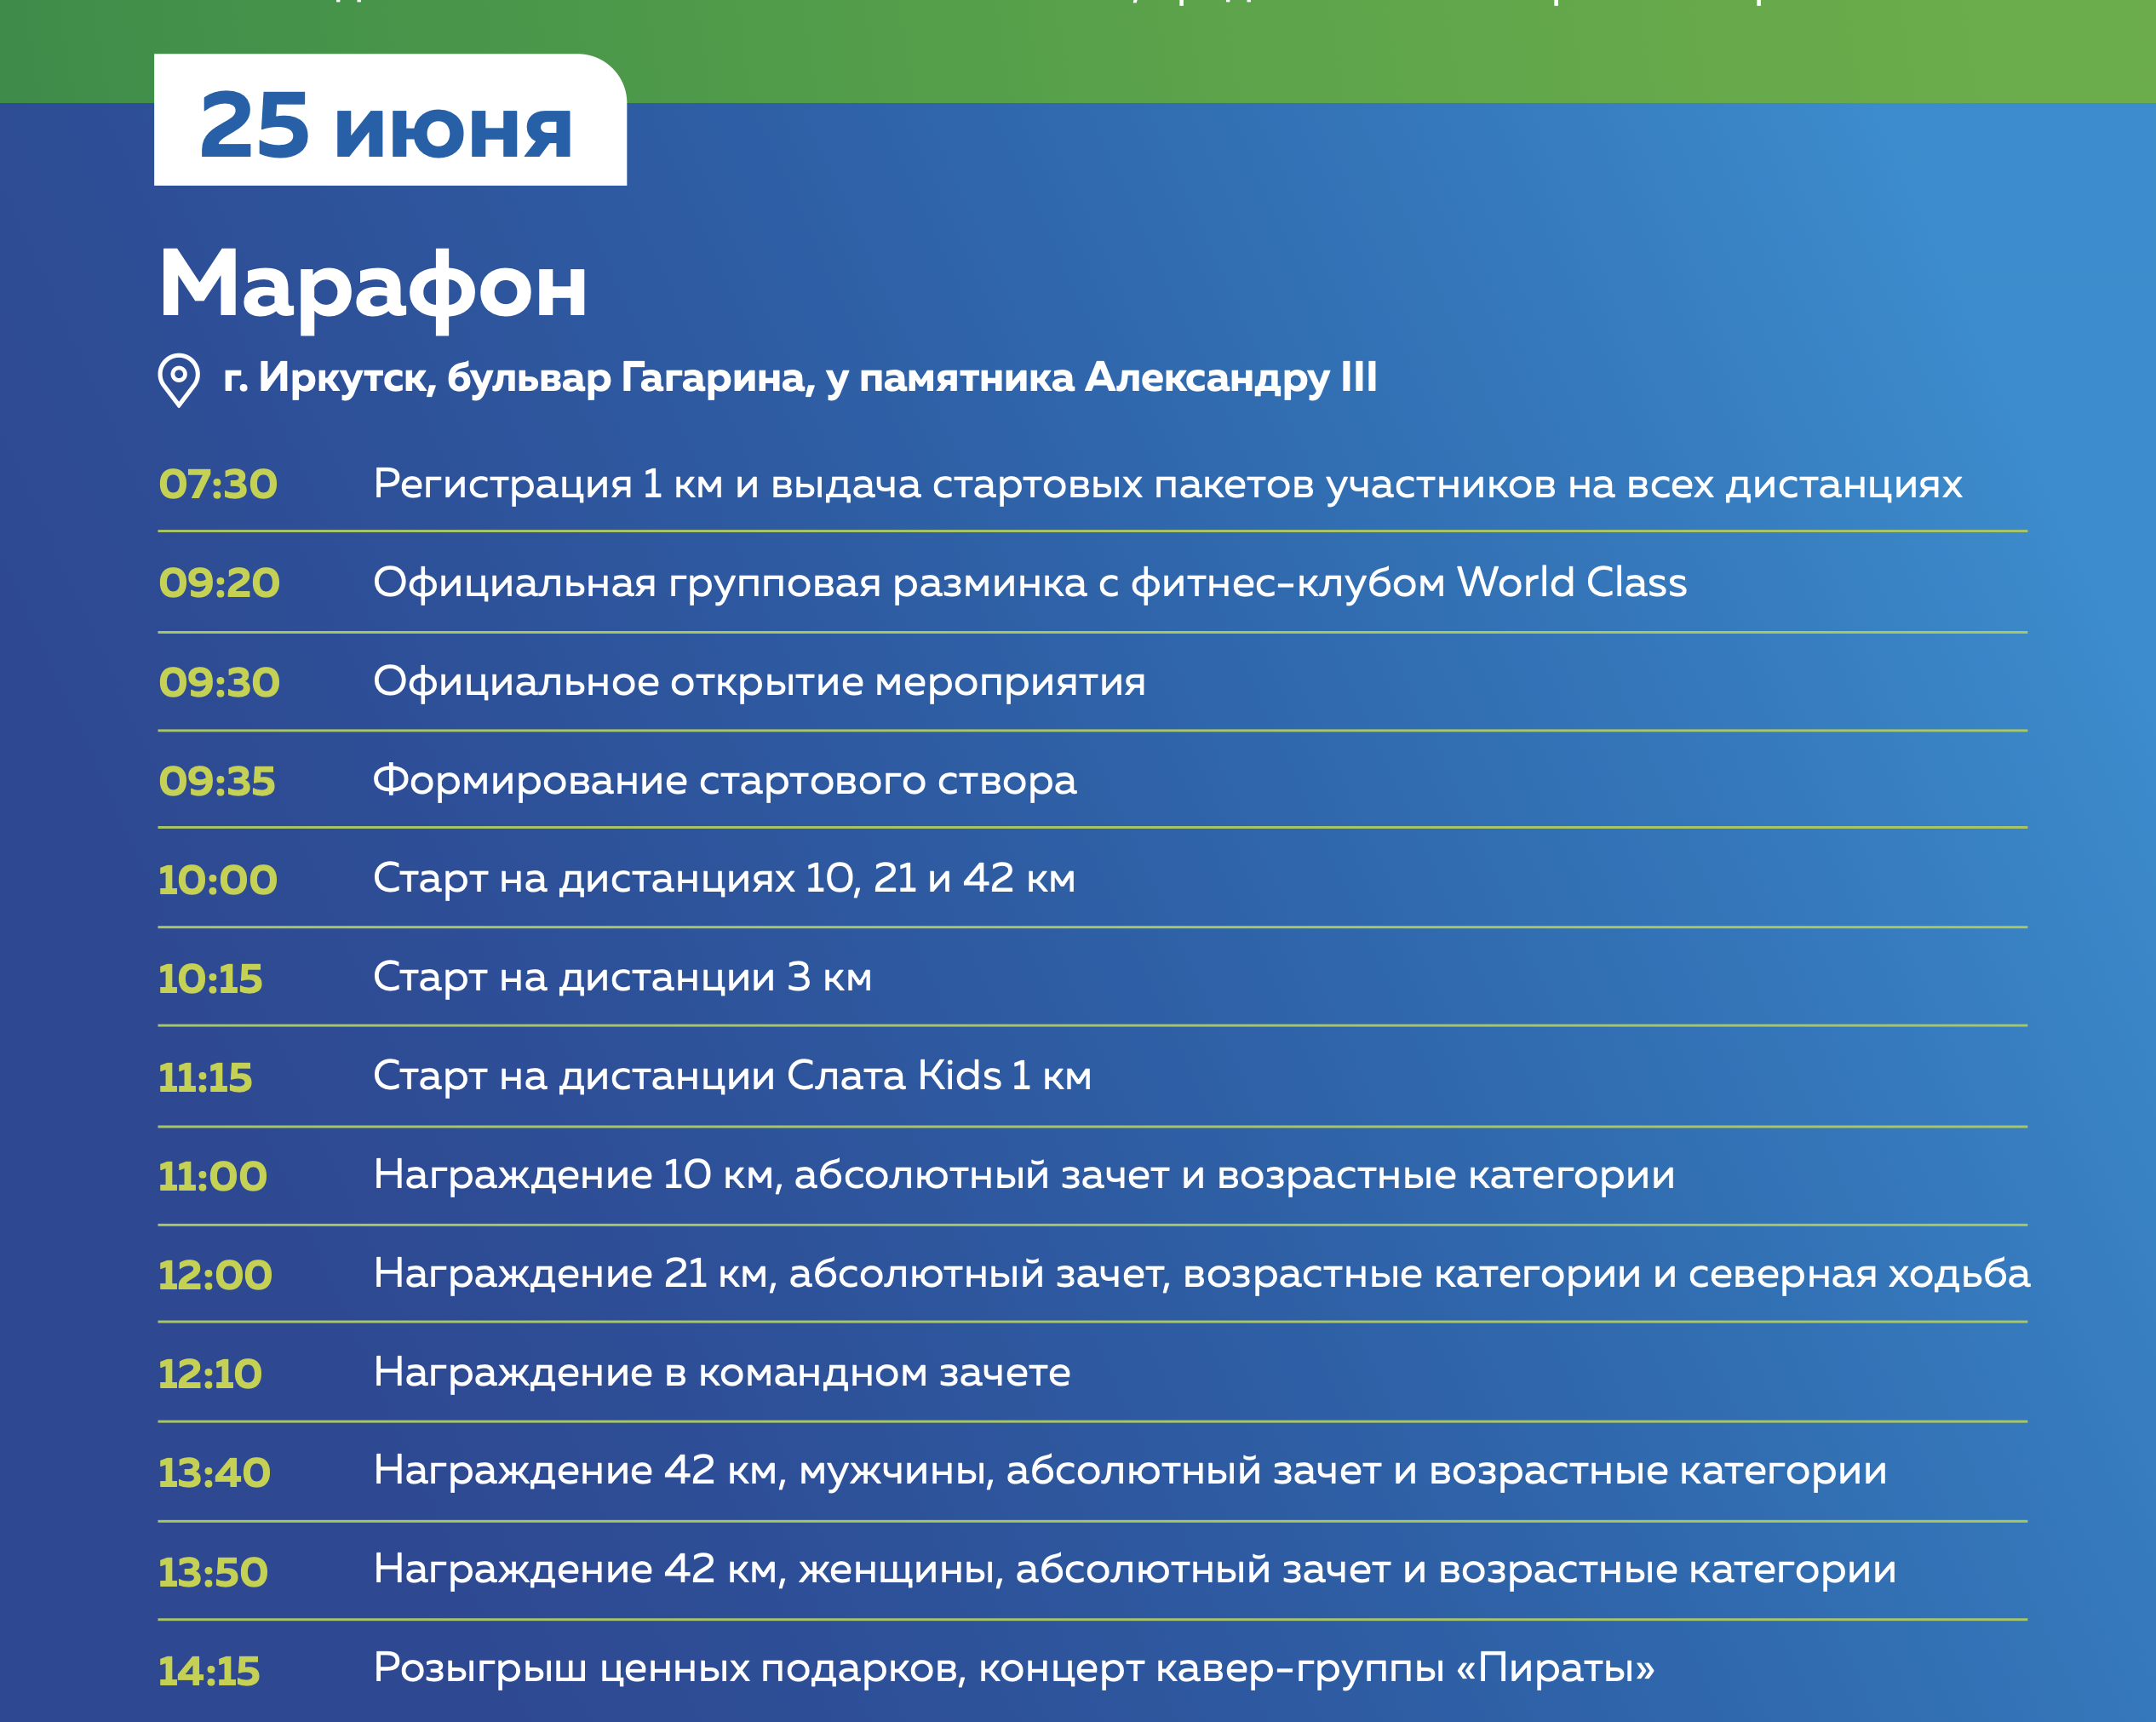 22 1 5 программа. Слата марафон 2023. Иркутский Международный Слата марафон 2023. Фото Иркутский Слата марафон. 5 Программа на сегодня.